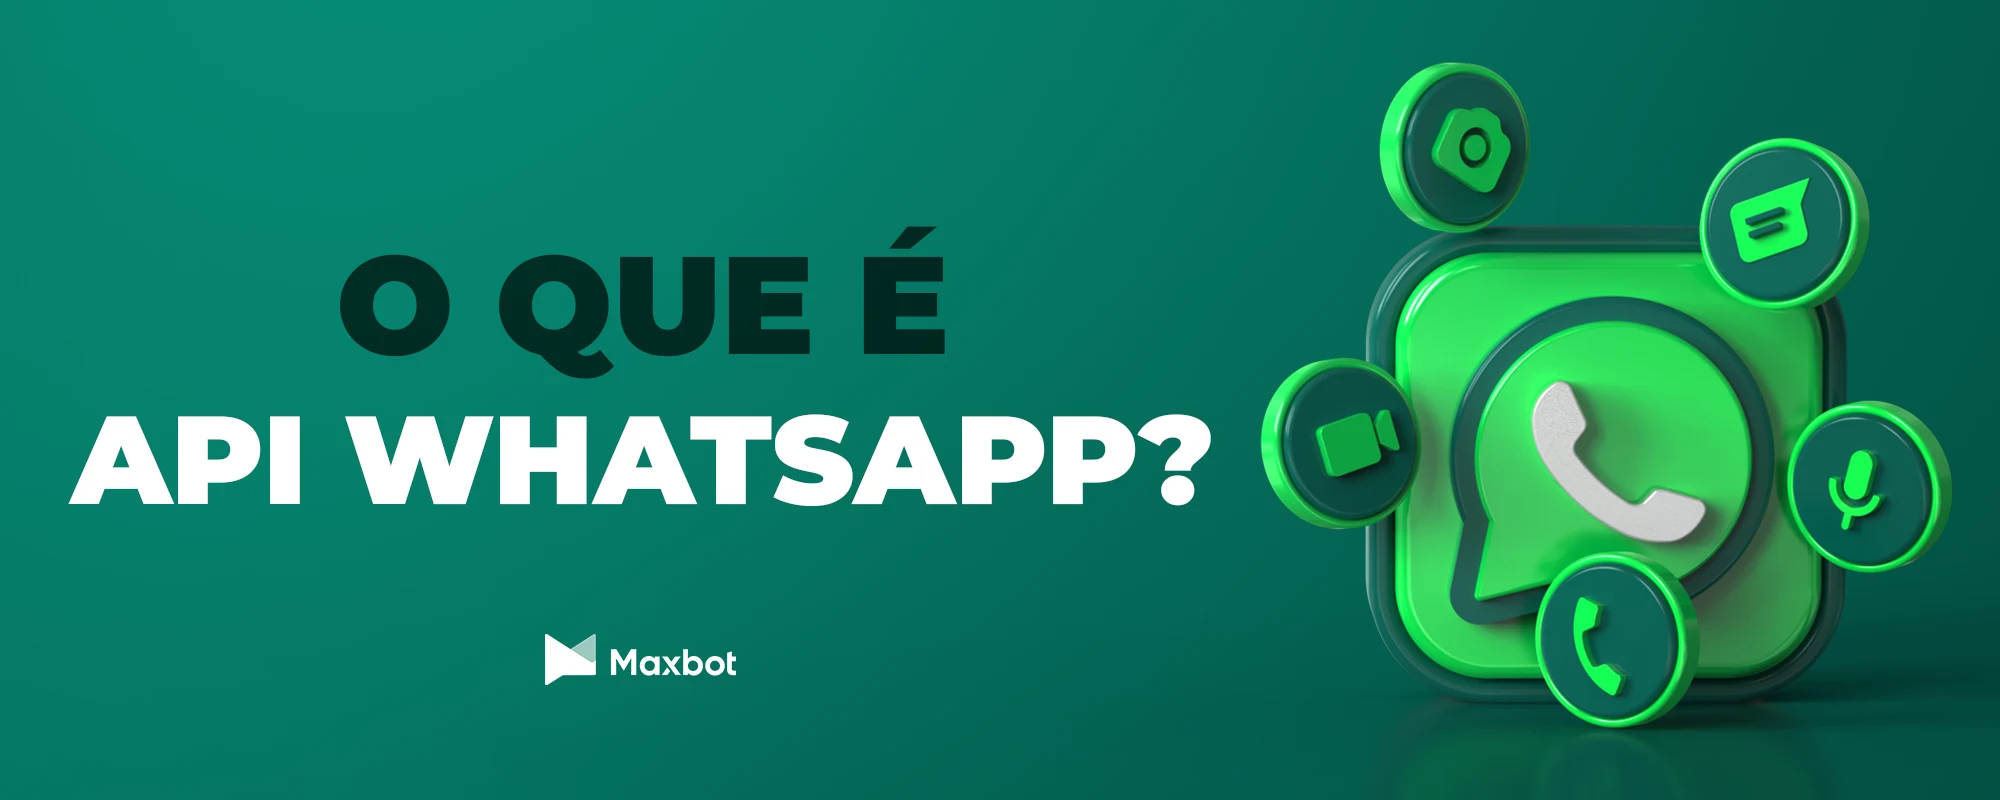 Imagem com fundo verde e o símbolo do whatsapp com a escrita "o que é API Whatsapp?"